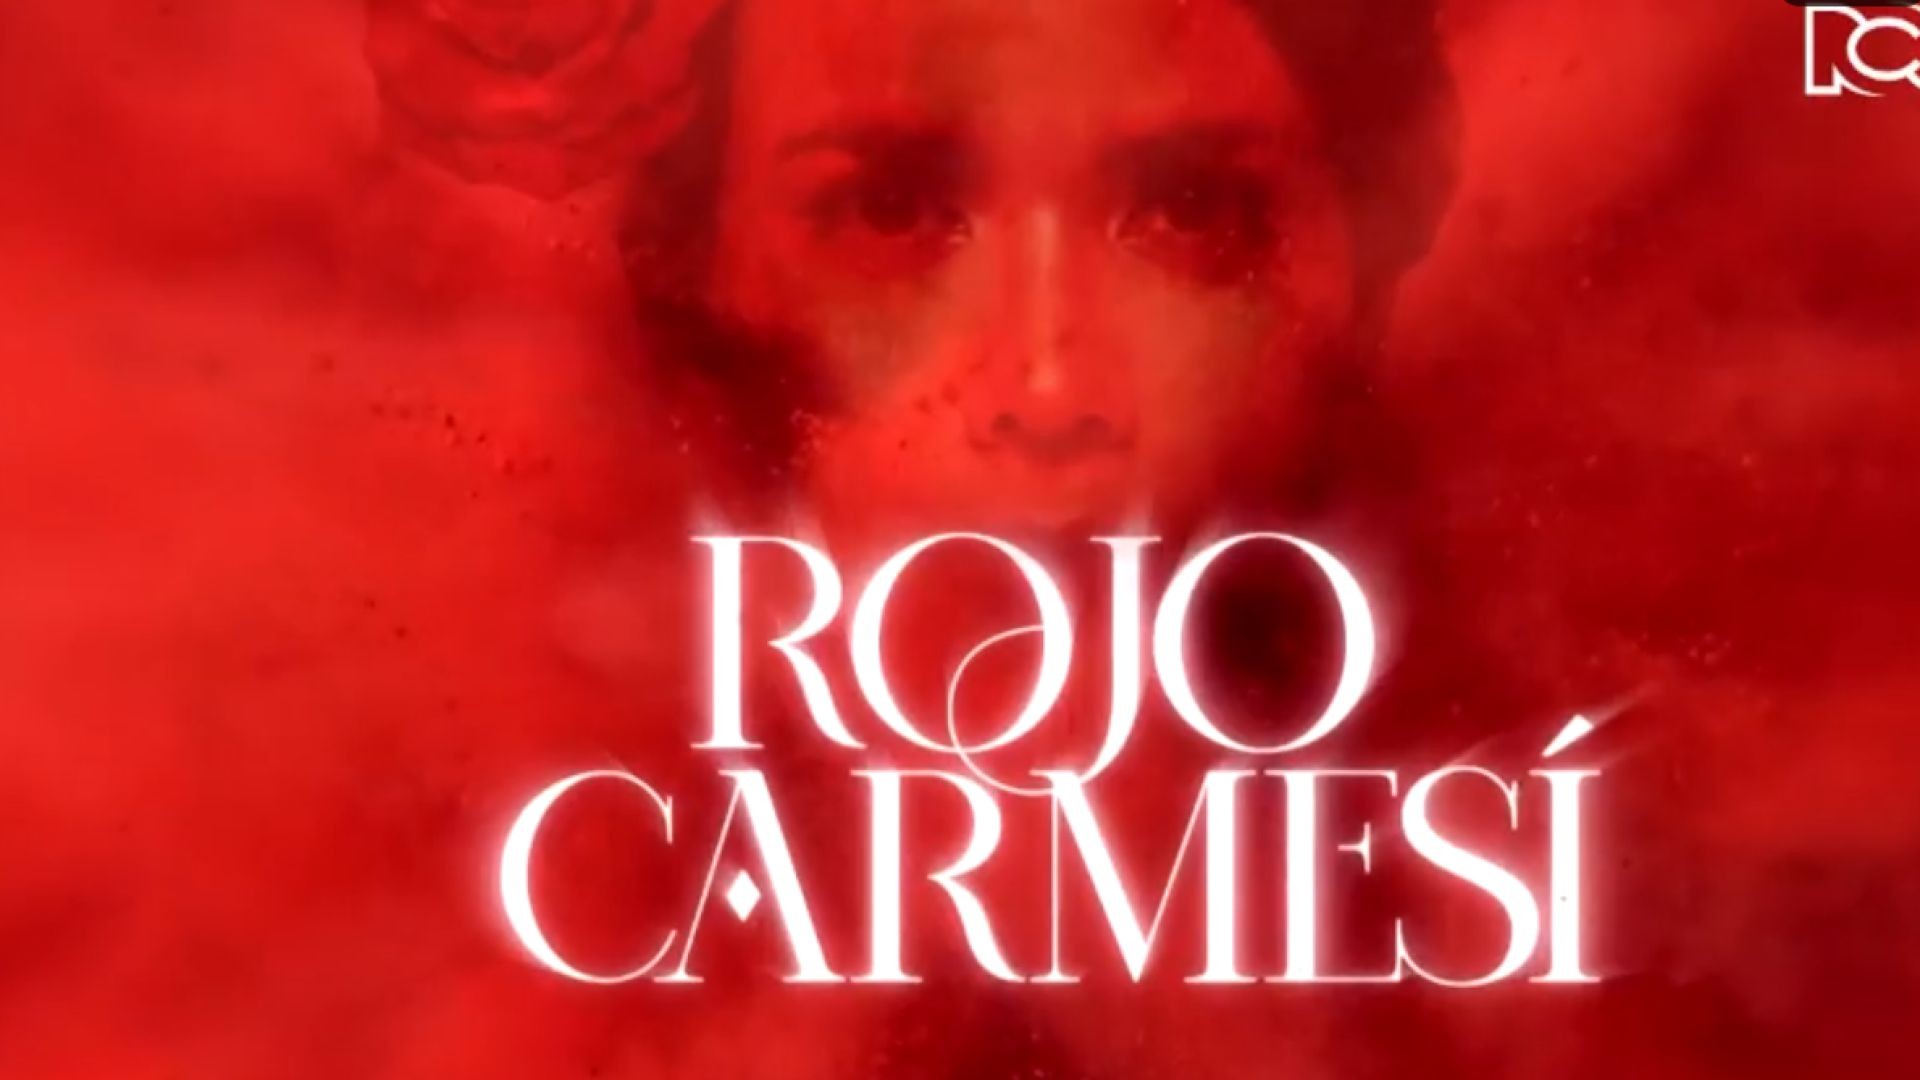 Rojo Carmesí Capitulo 8 Completo - Rojo Carmesí telenovela